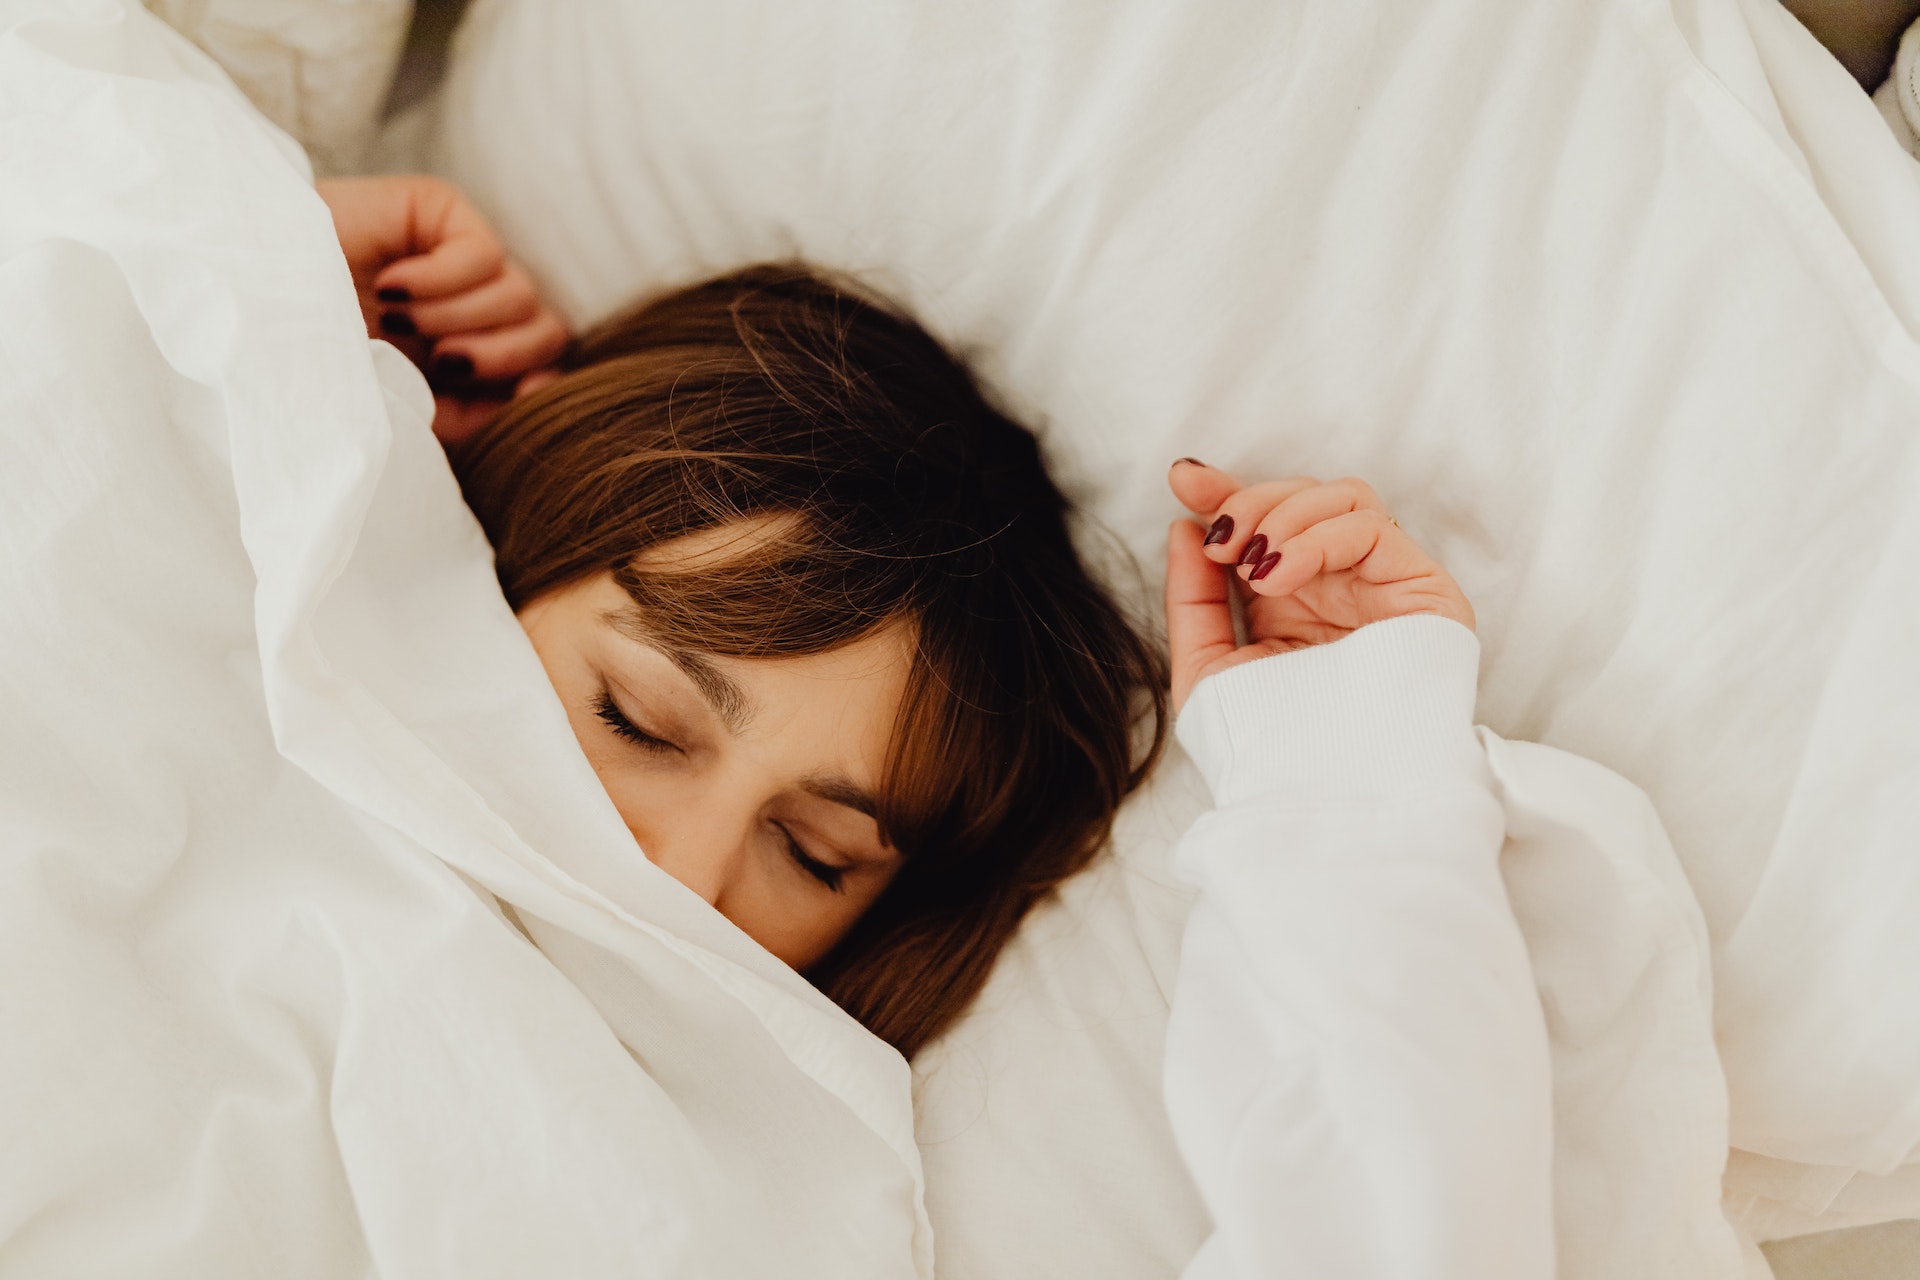 Dormir bien de noche podría salvarle la vida a los hombres